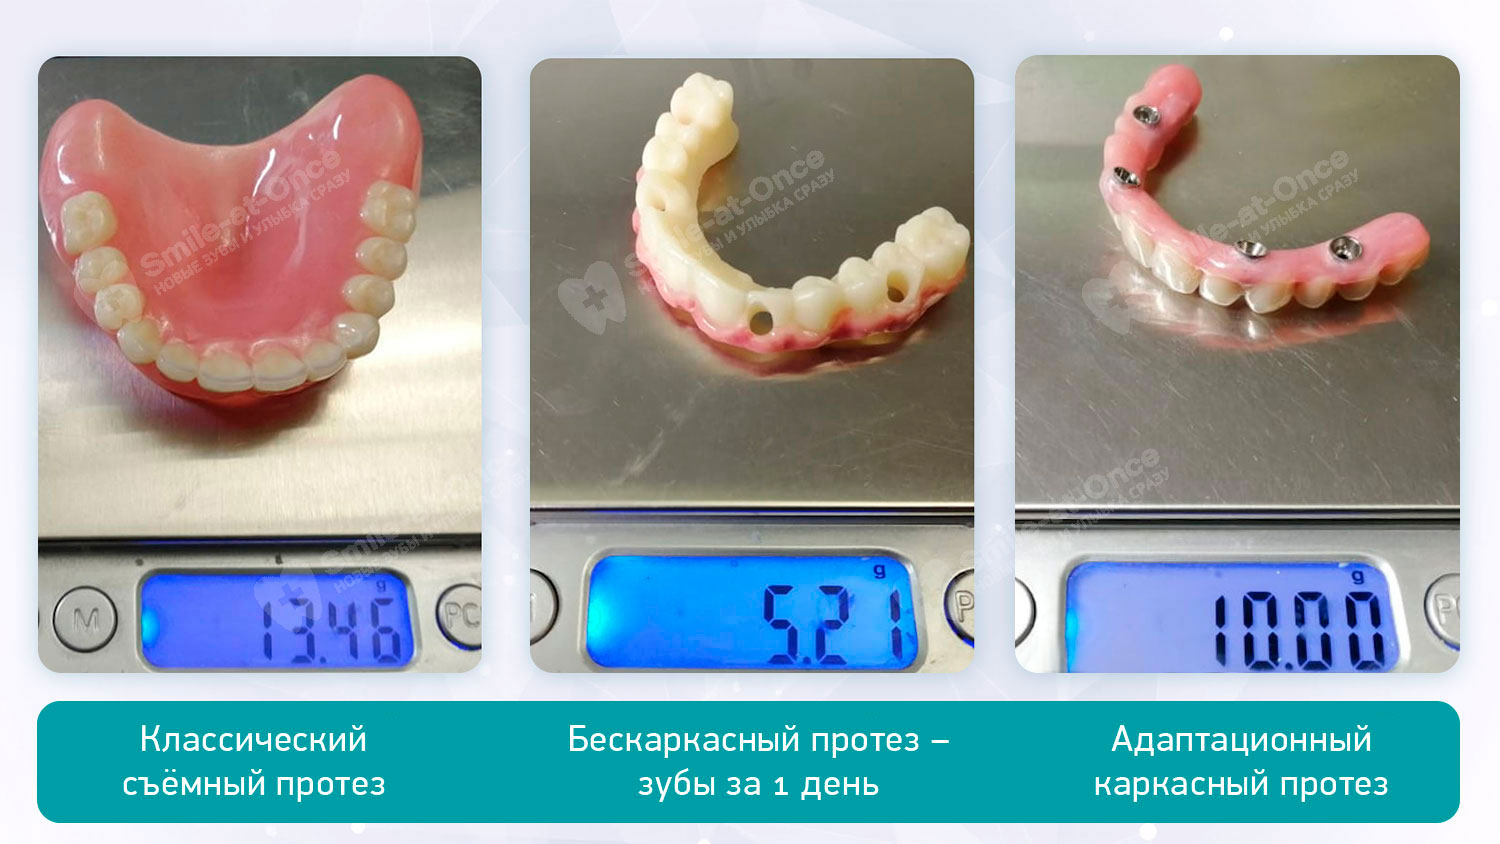 Сравнение веса зубных протезов